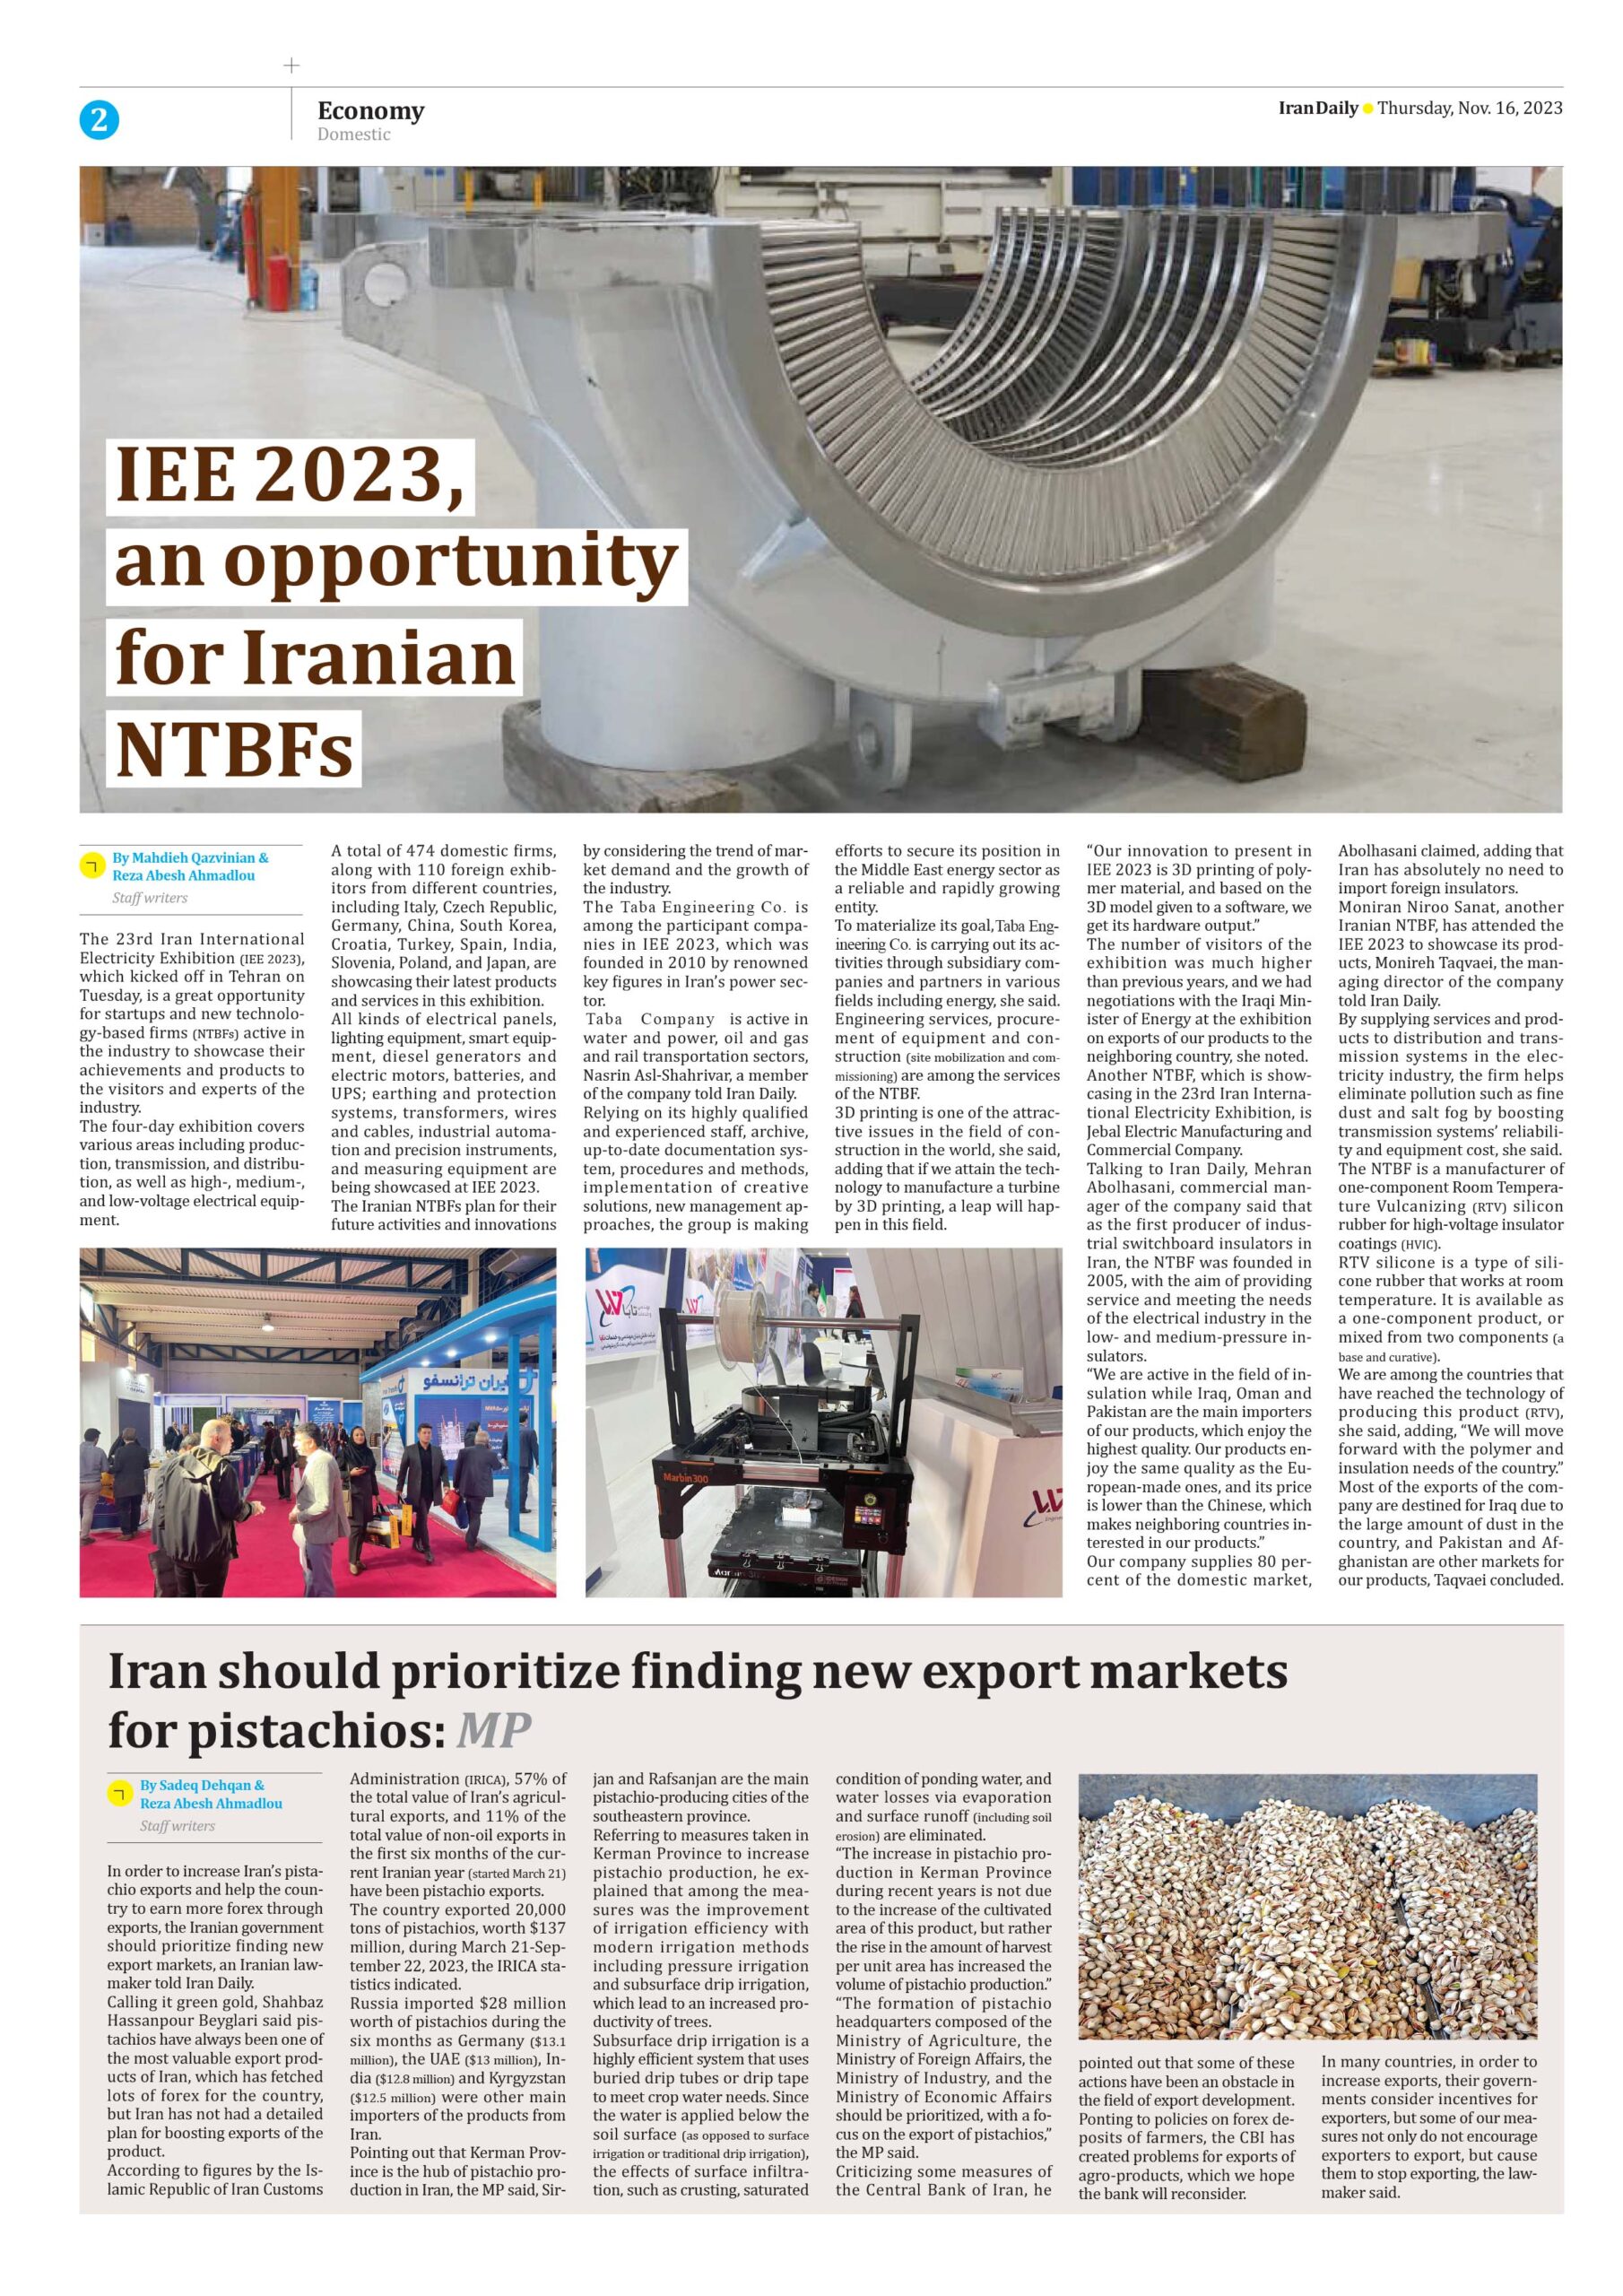 پوشش خبری از غرفه ی شرکت تابا در نمایشگاه صنعت برق در روزنامه ایران دیلی